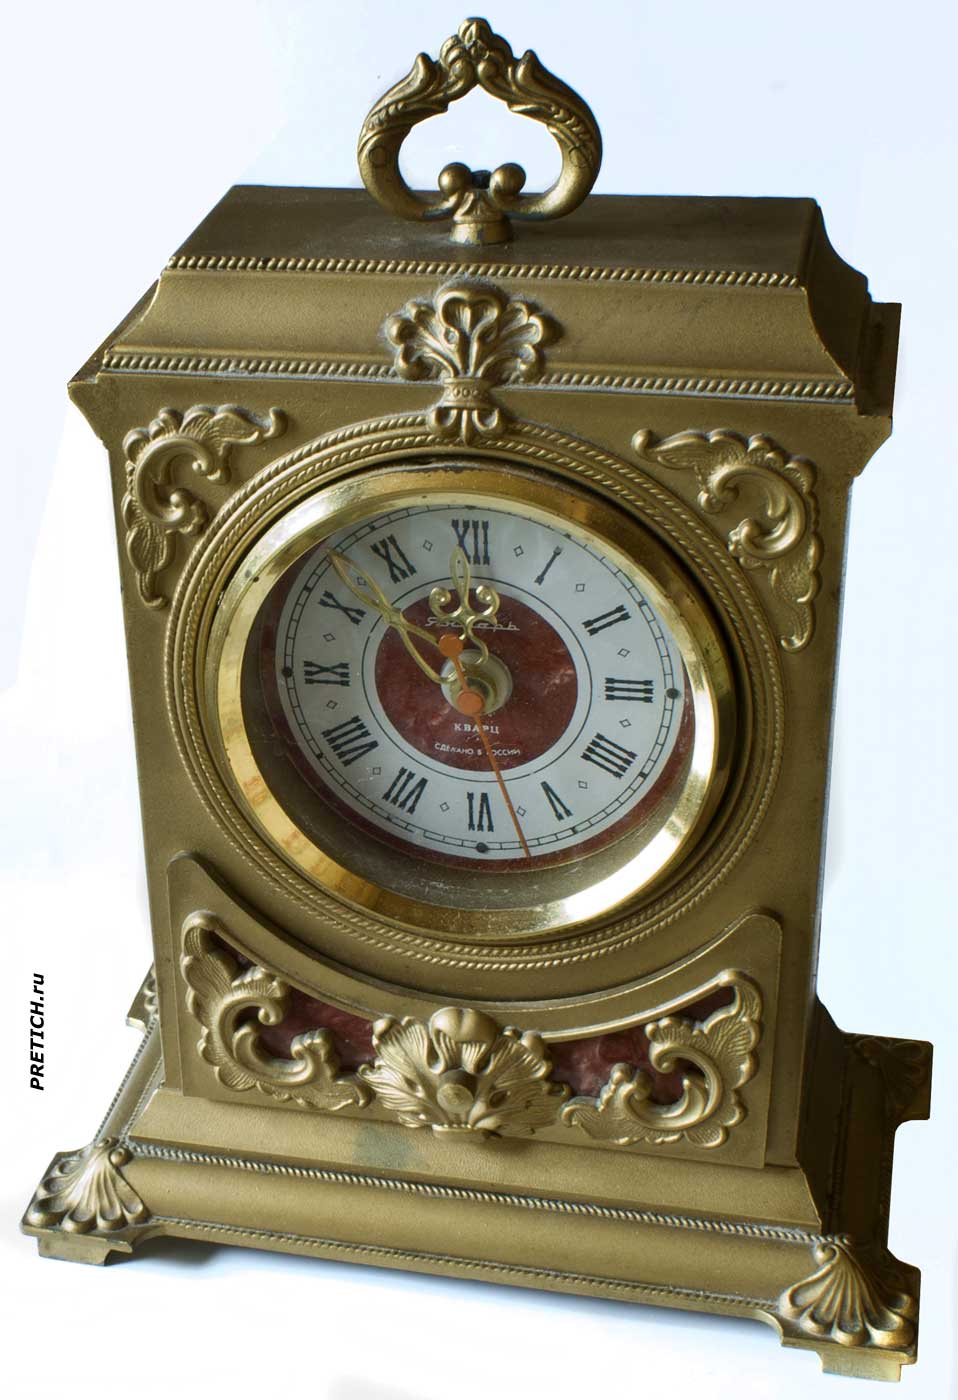 Янтарь Кварц 56206 часы Сделано в СССР, описание